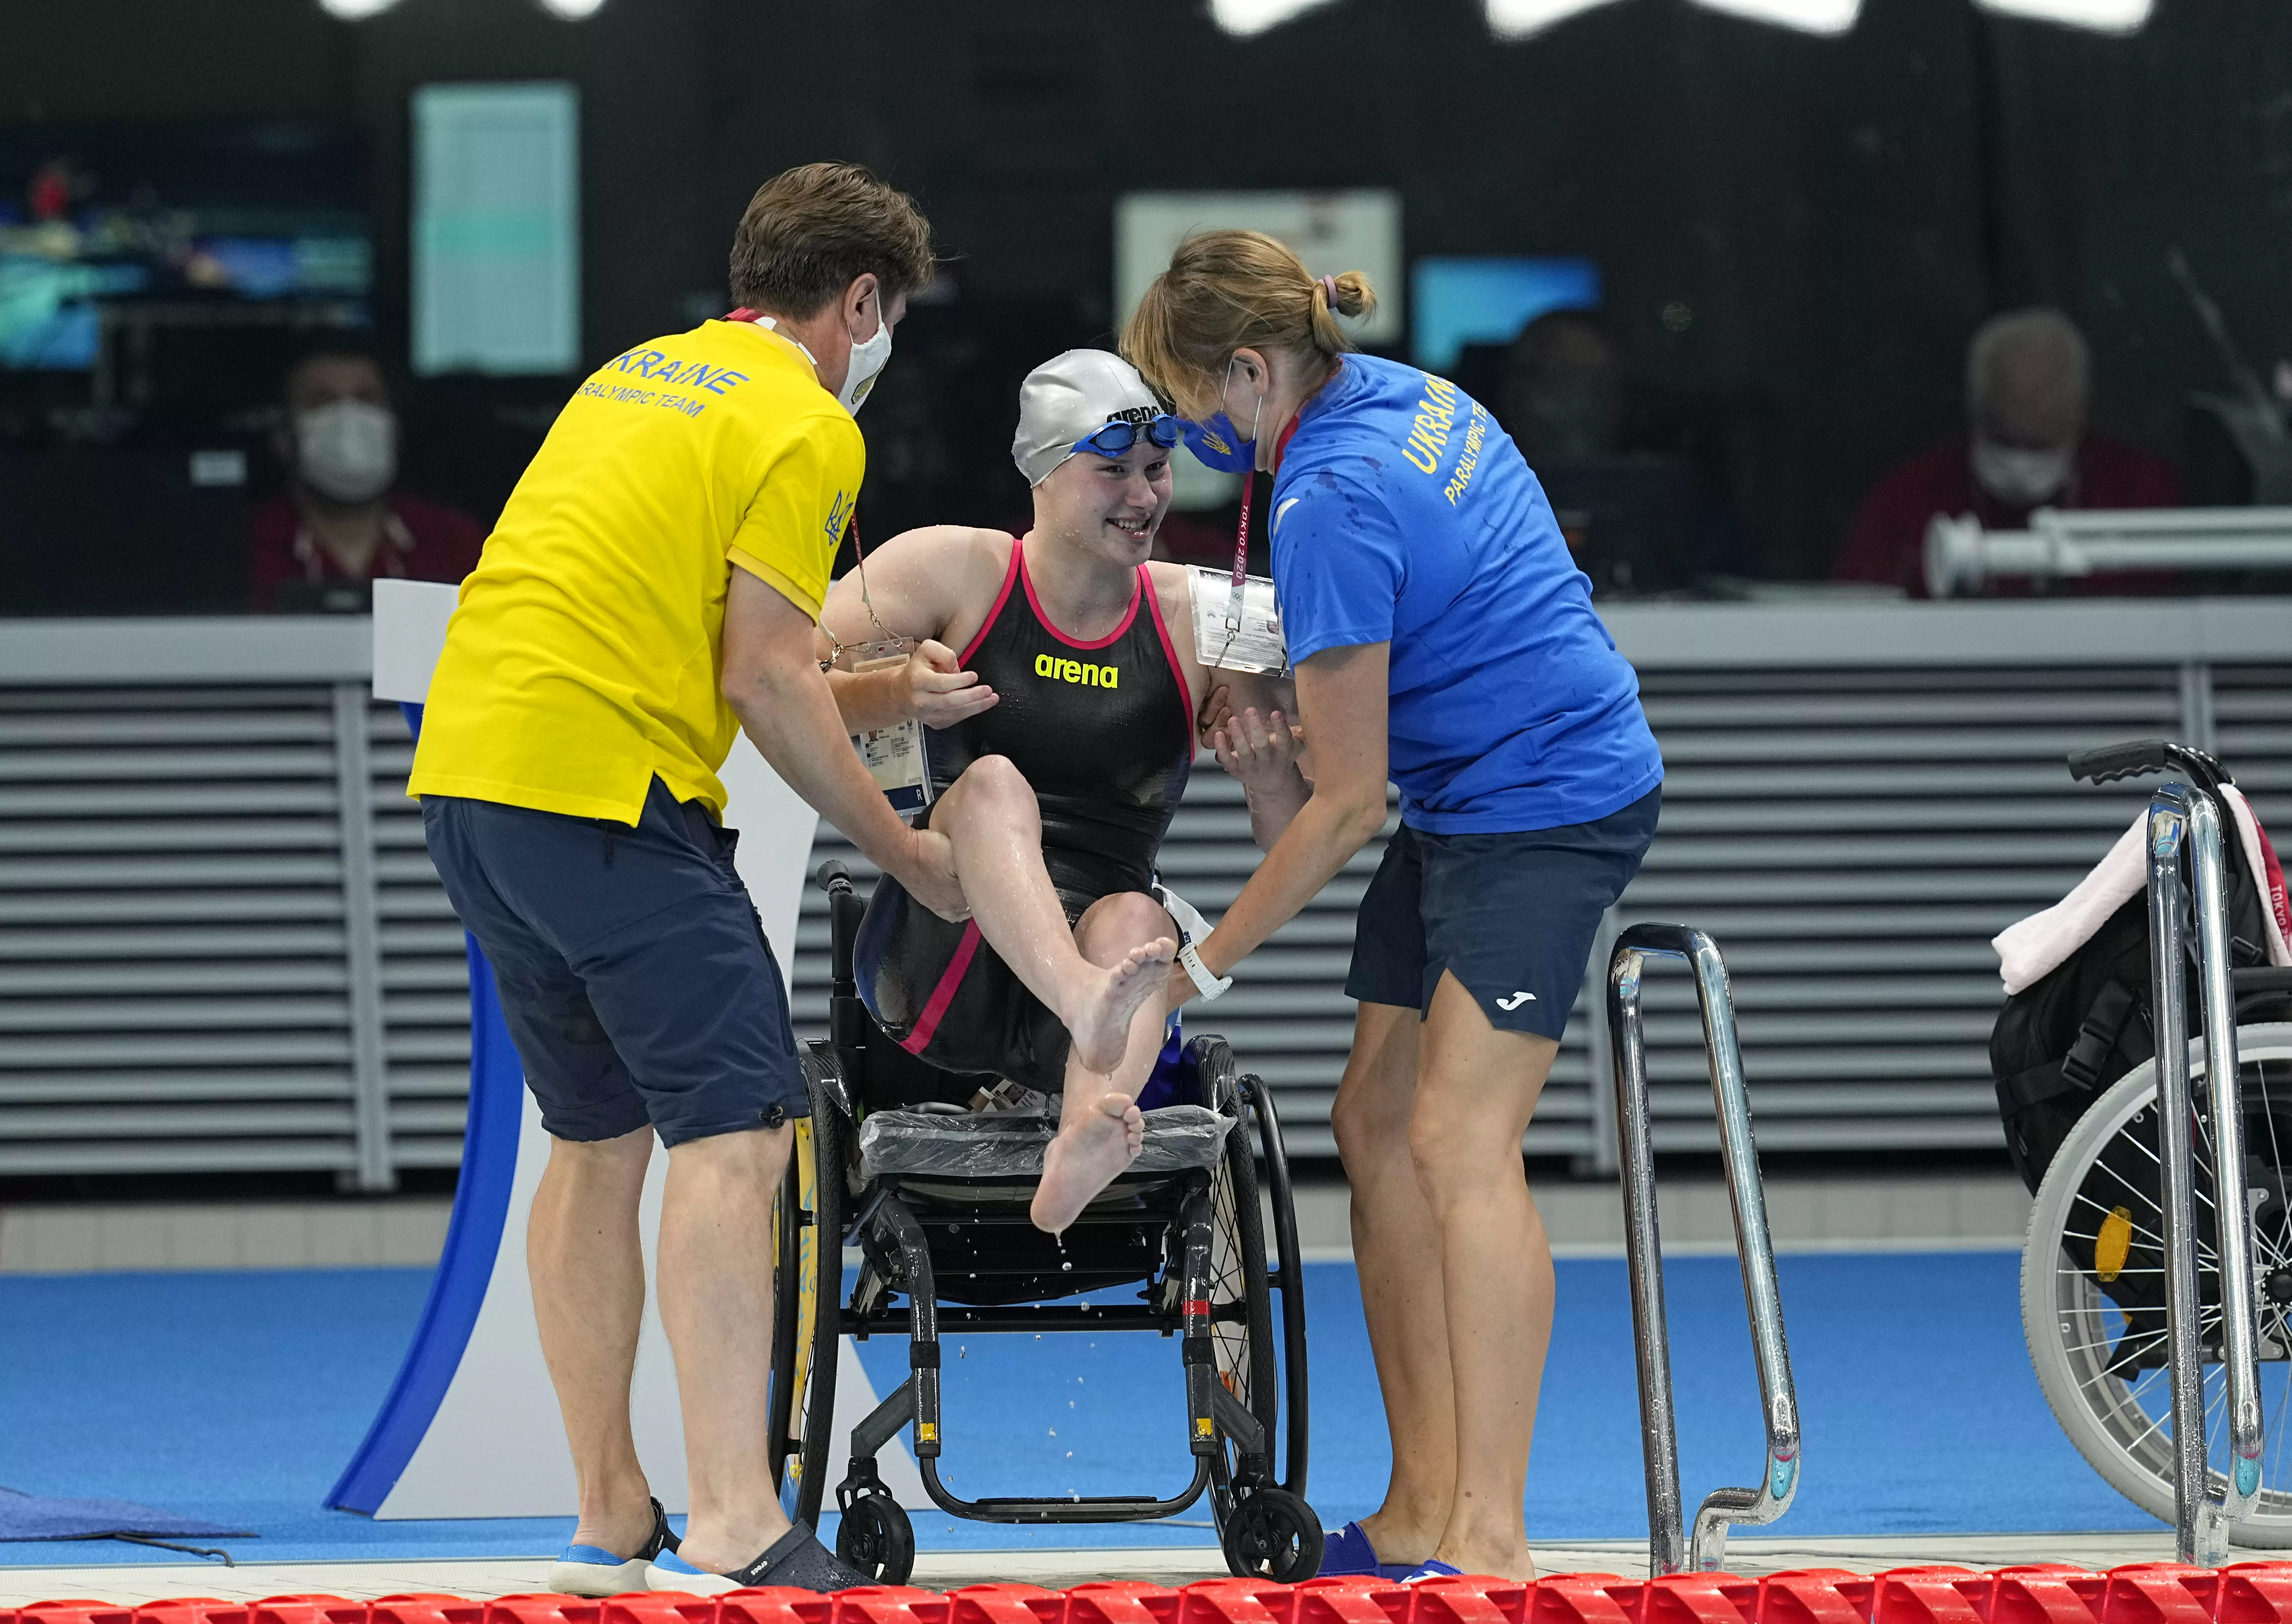 Першу золоту медаль на Паралімпіаді-2020 виграла плавчиня Єлізавета Мерешко